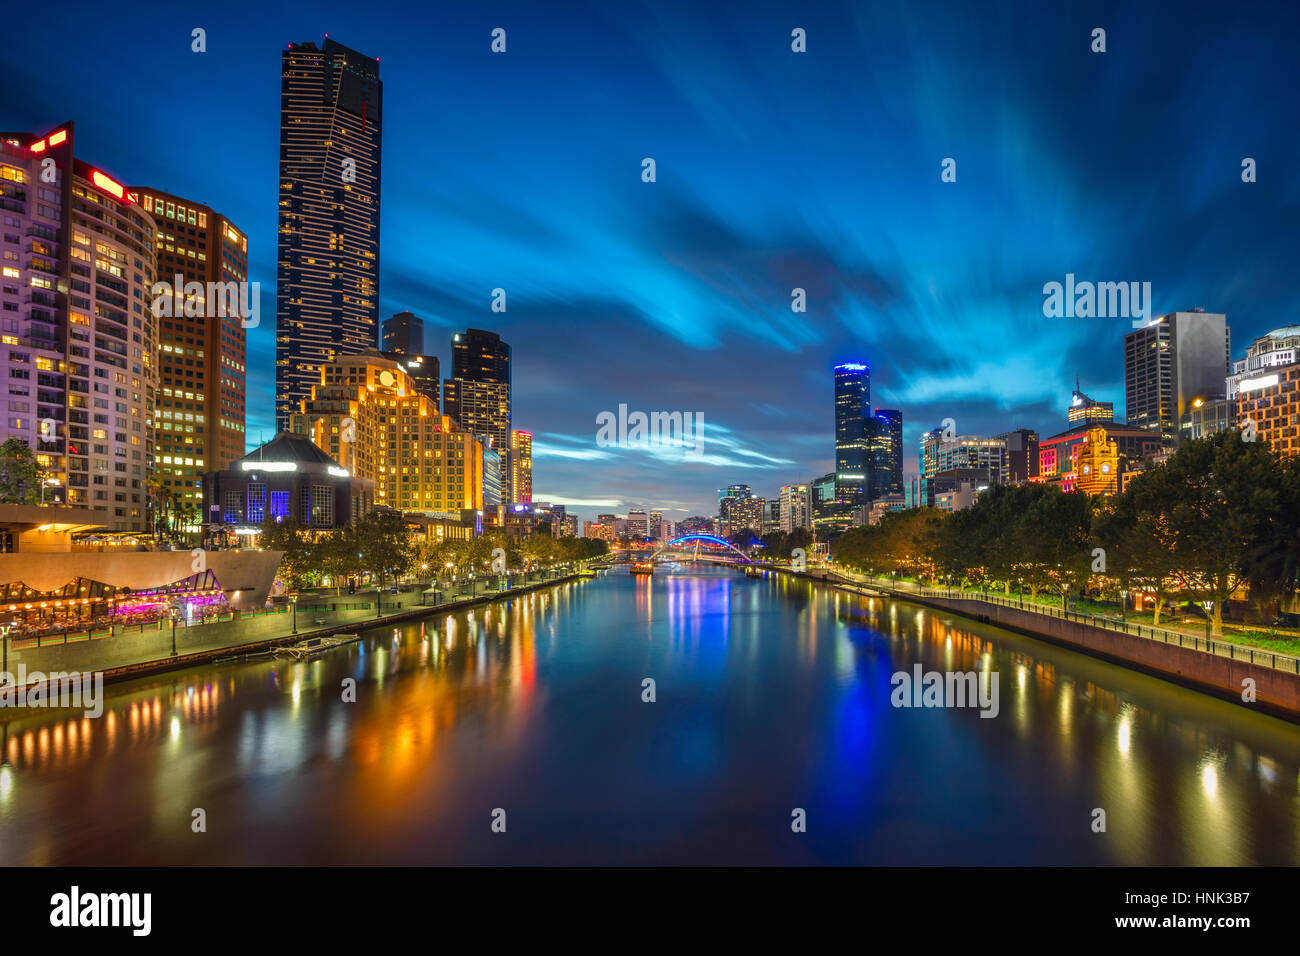 Stadt von Melbourne. Stadtbild Bild von Melbourne während der blauen Dämmerstunde. Stockfoto